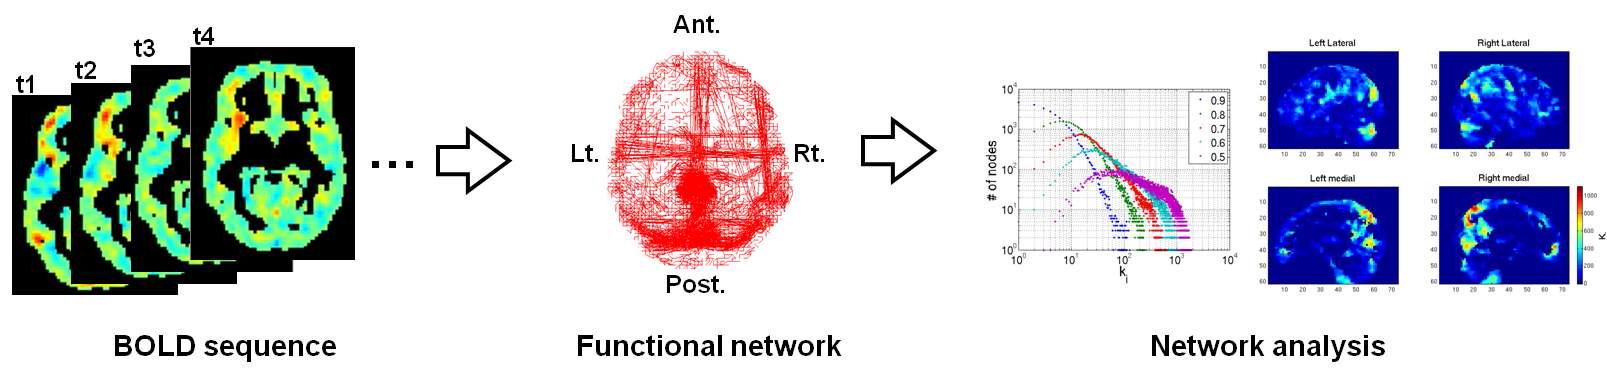 fMRI BOLD 신호로부터 네트워크 추출 및 분석 모식도